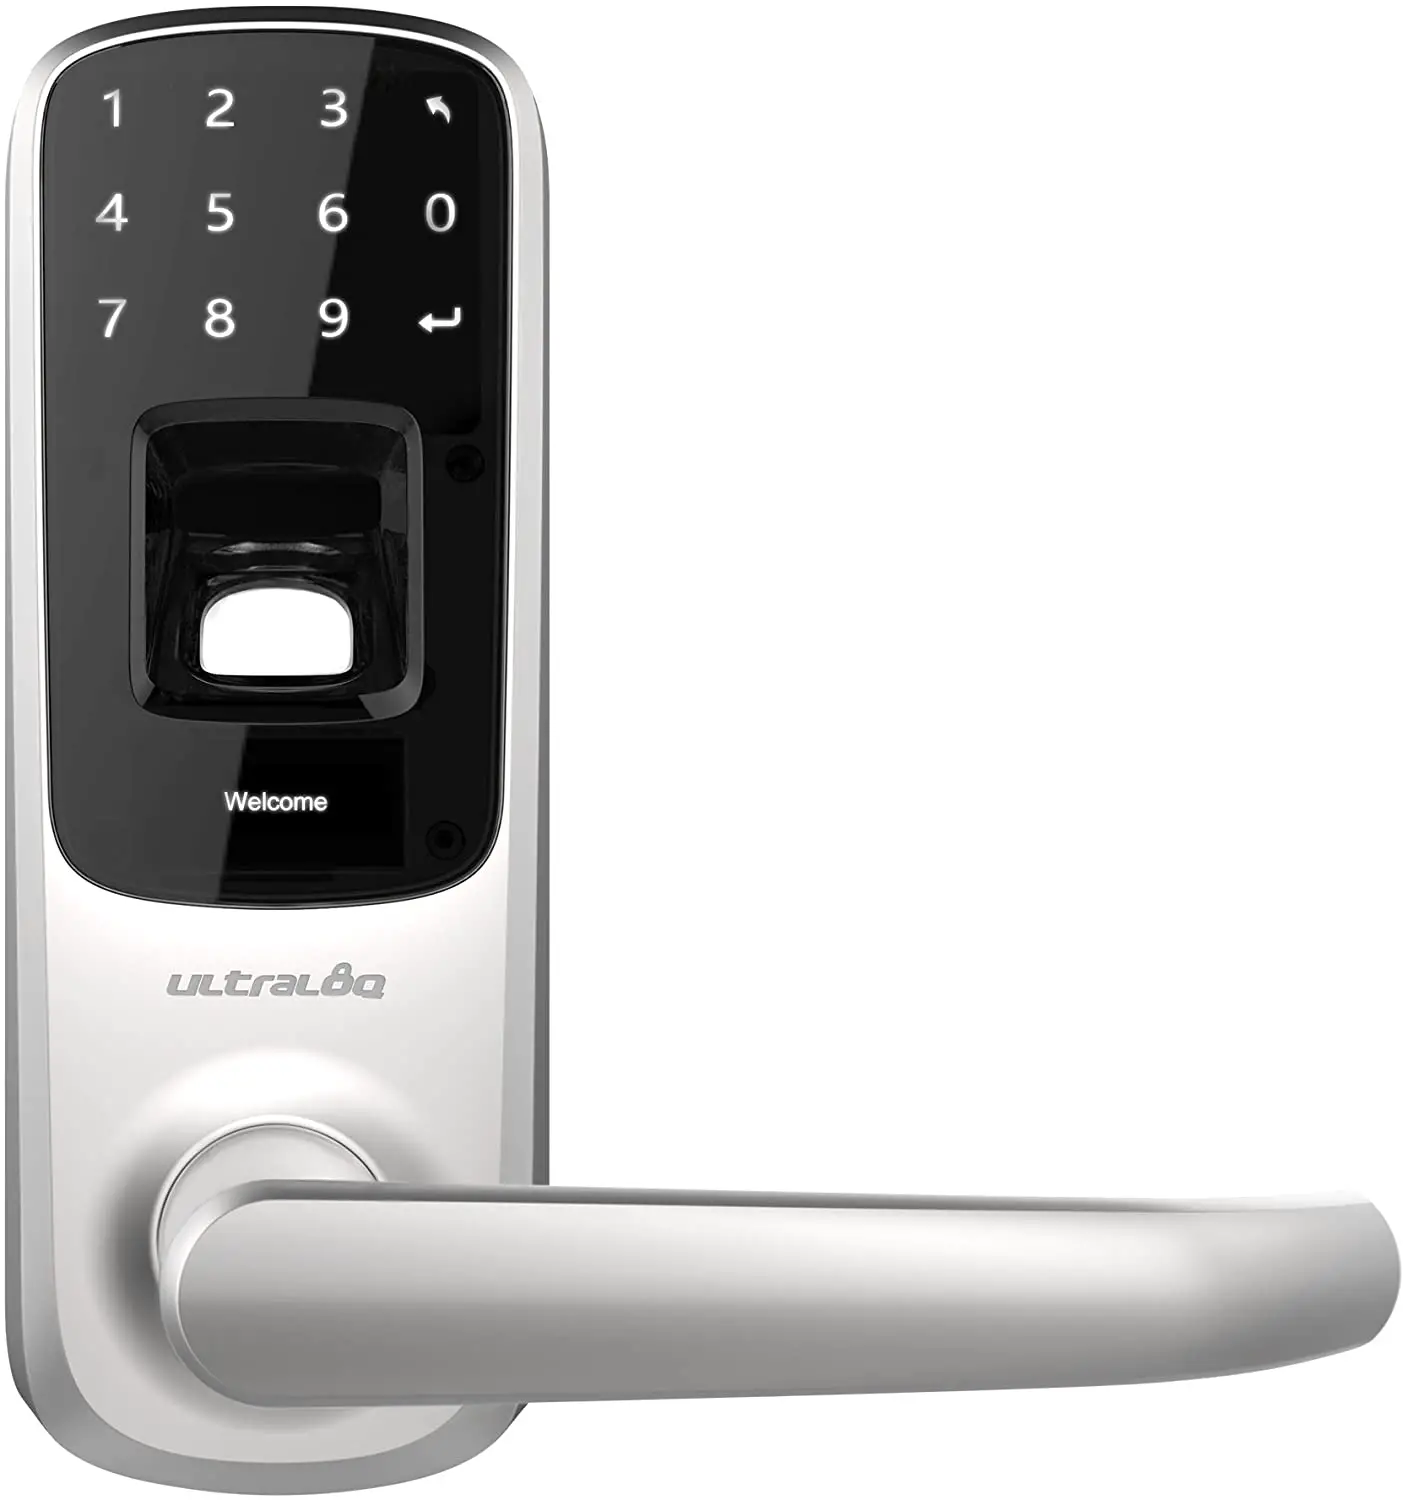 Google Assistant-Enabled Door Locks